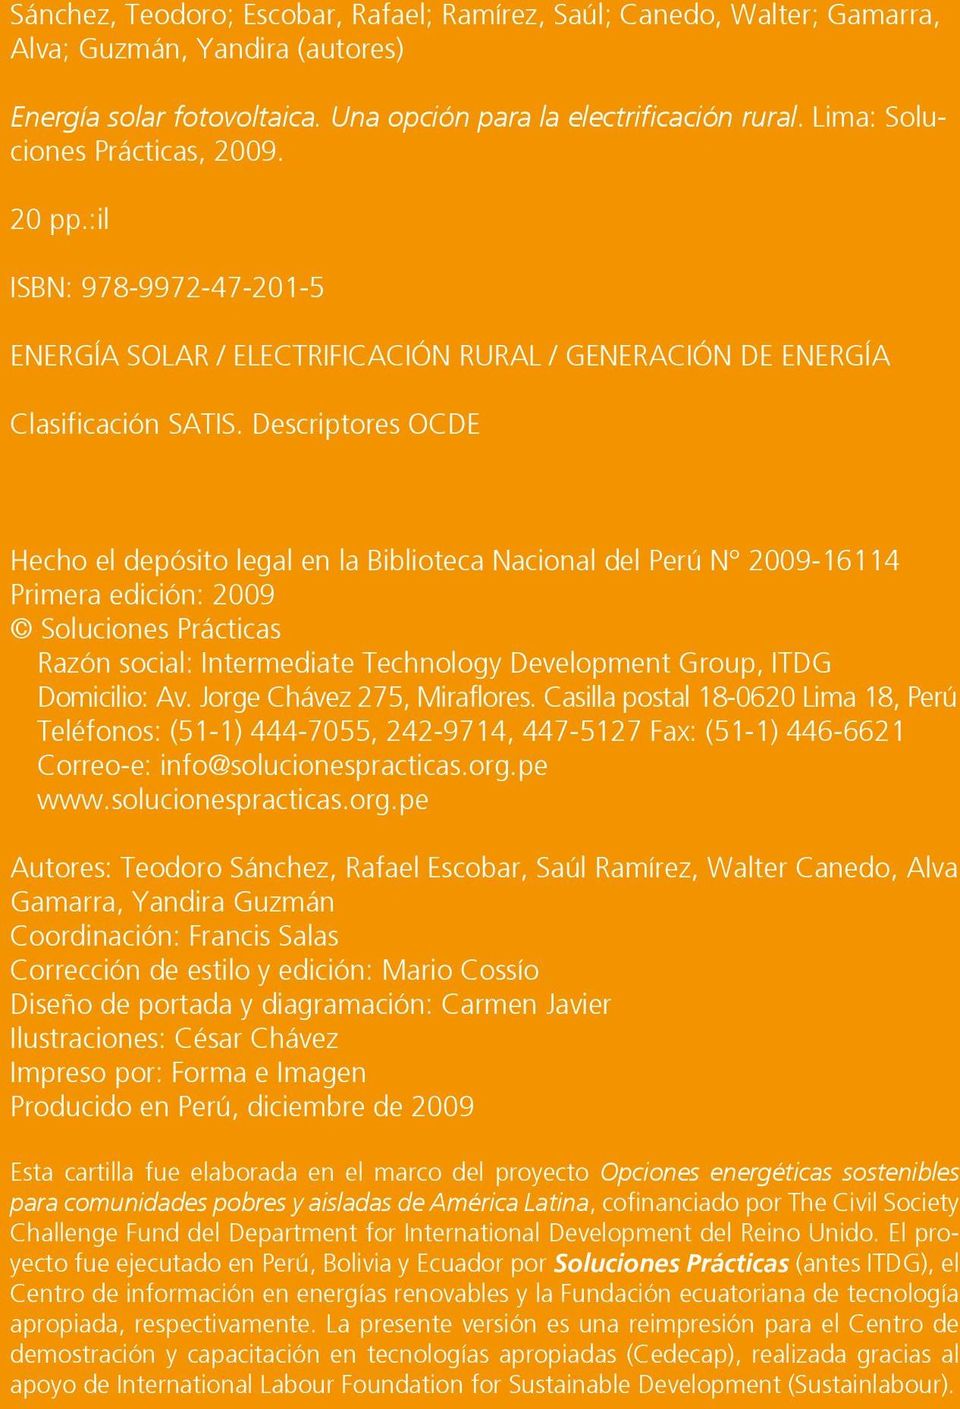 Descriptores OCDE Hecho el depósito legal en la Biblioteca Nacional del Perú N 2009-16114 Primera edición: 2009 Soluciones Prácticas Razón social: Intermediate Technology Development Group, ITDG